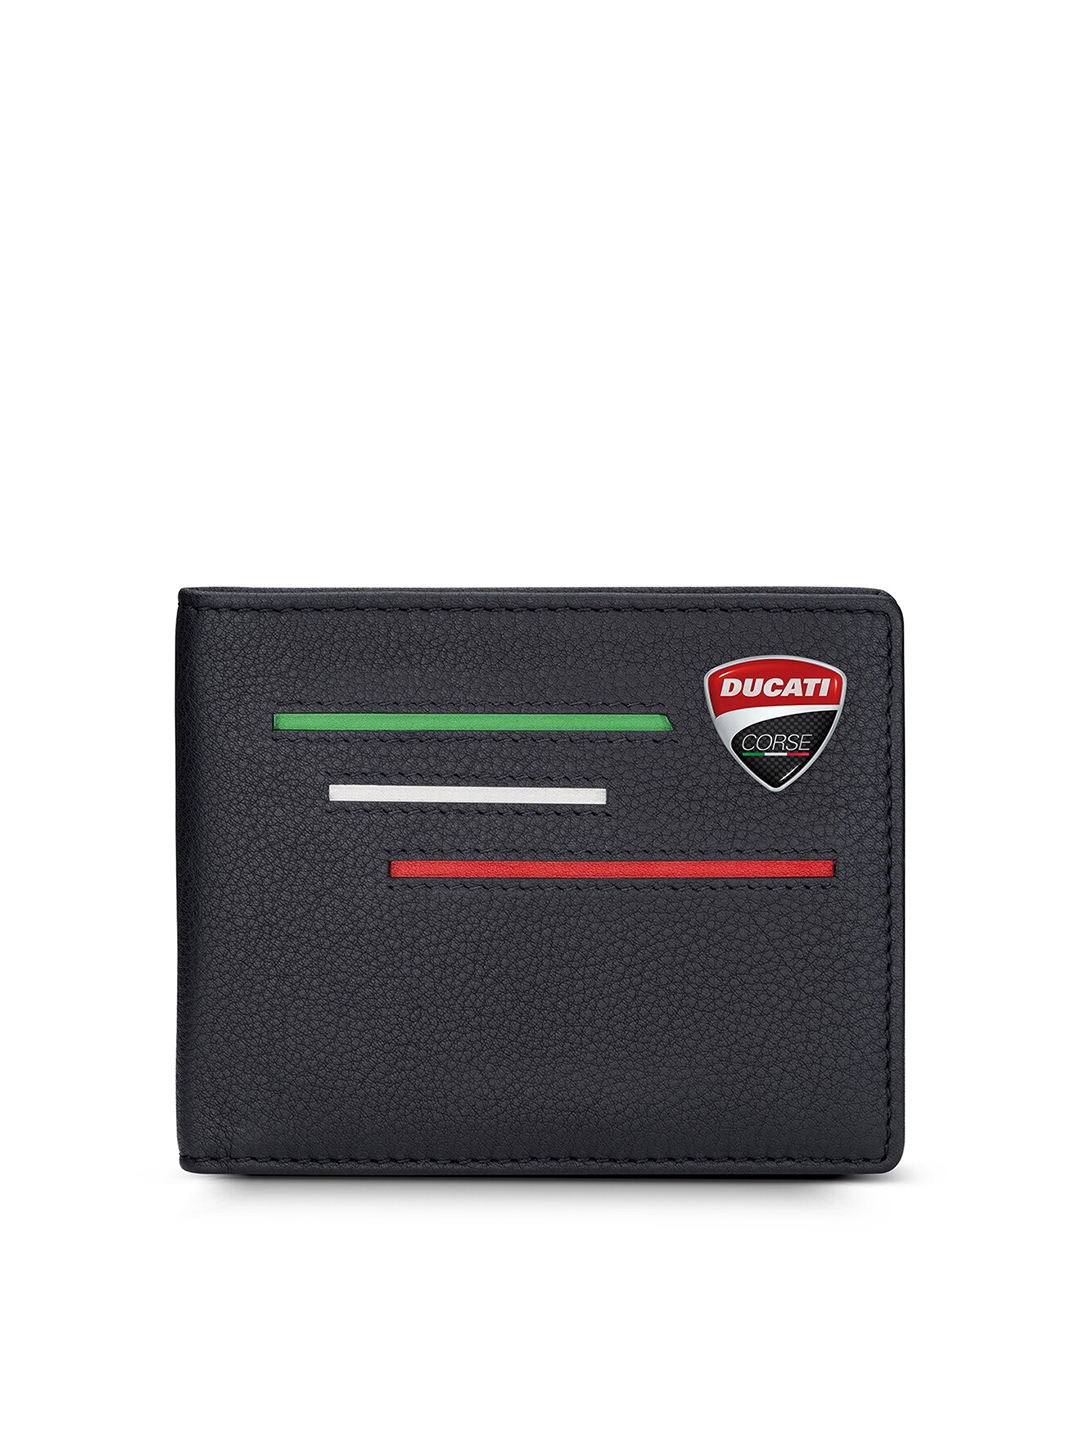 Buy DUCATI CORSE Men Leather Two Fold Wallet - Wallets for Men 21169064 ...